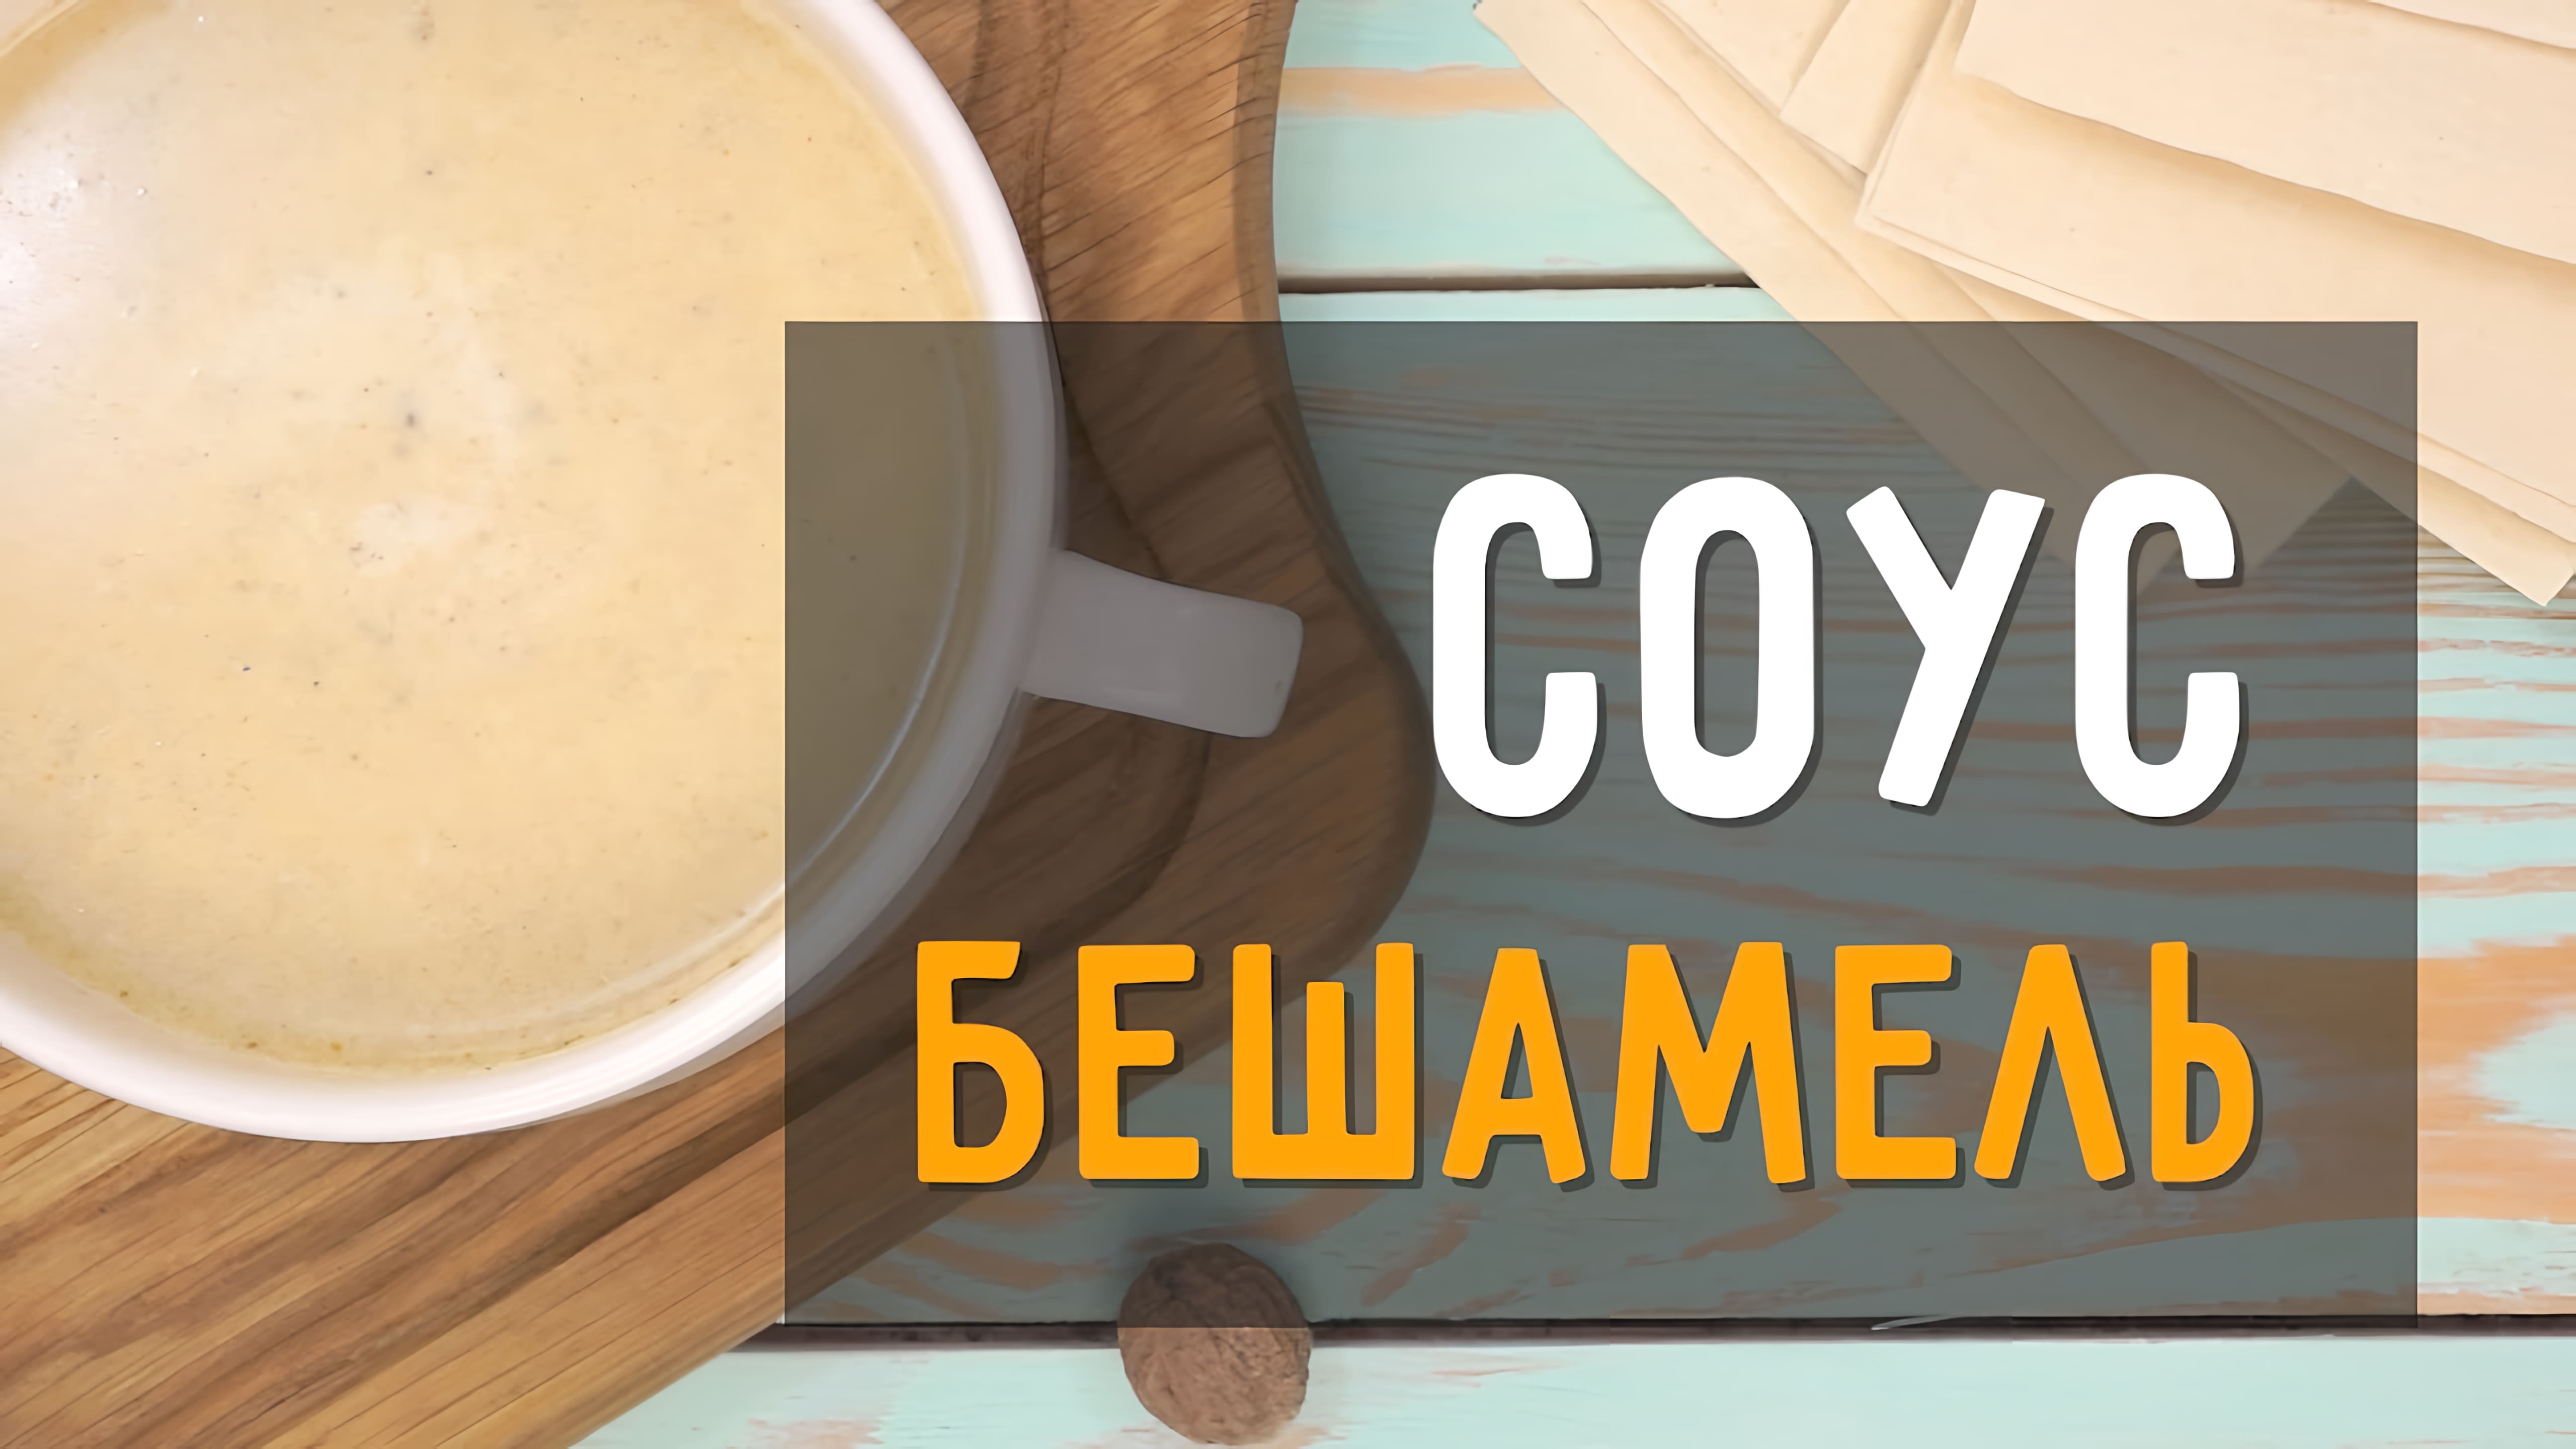 Видео: Соус Бешамель классический рецепт в домашних условиях. Сделает ваше блюдо вкуснее, чем в ресторане!